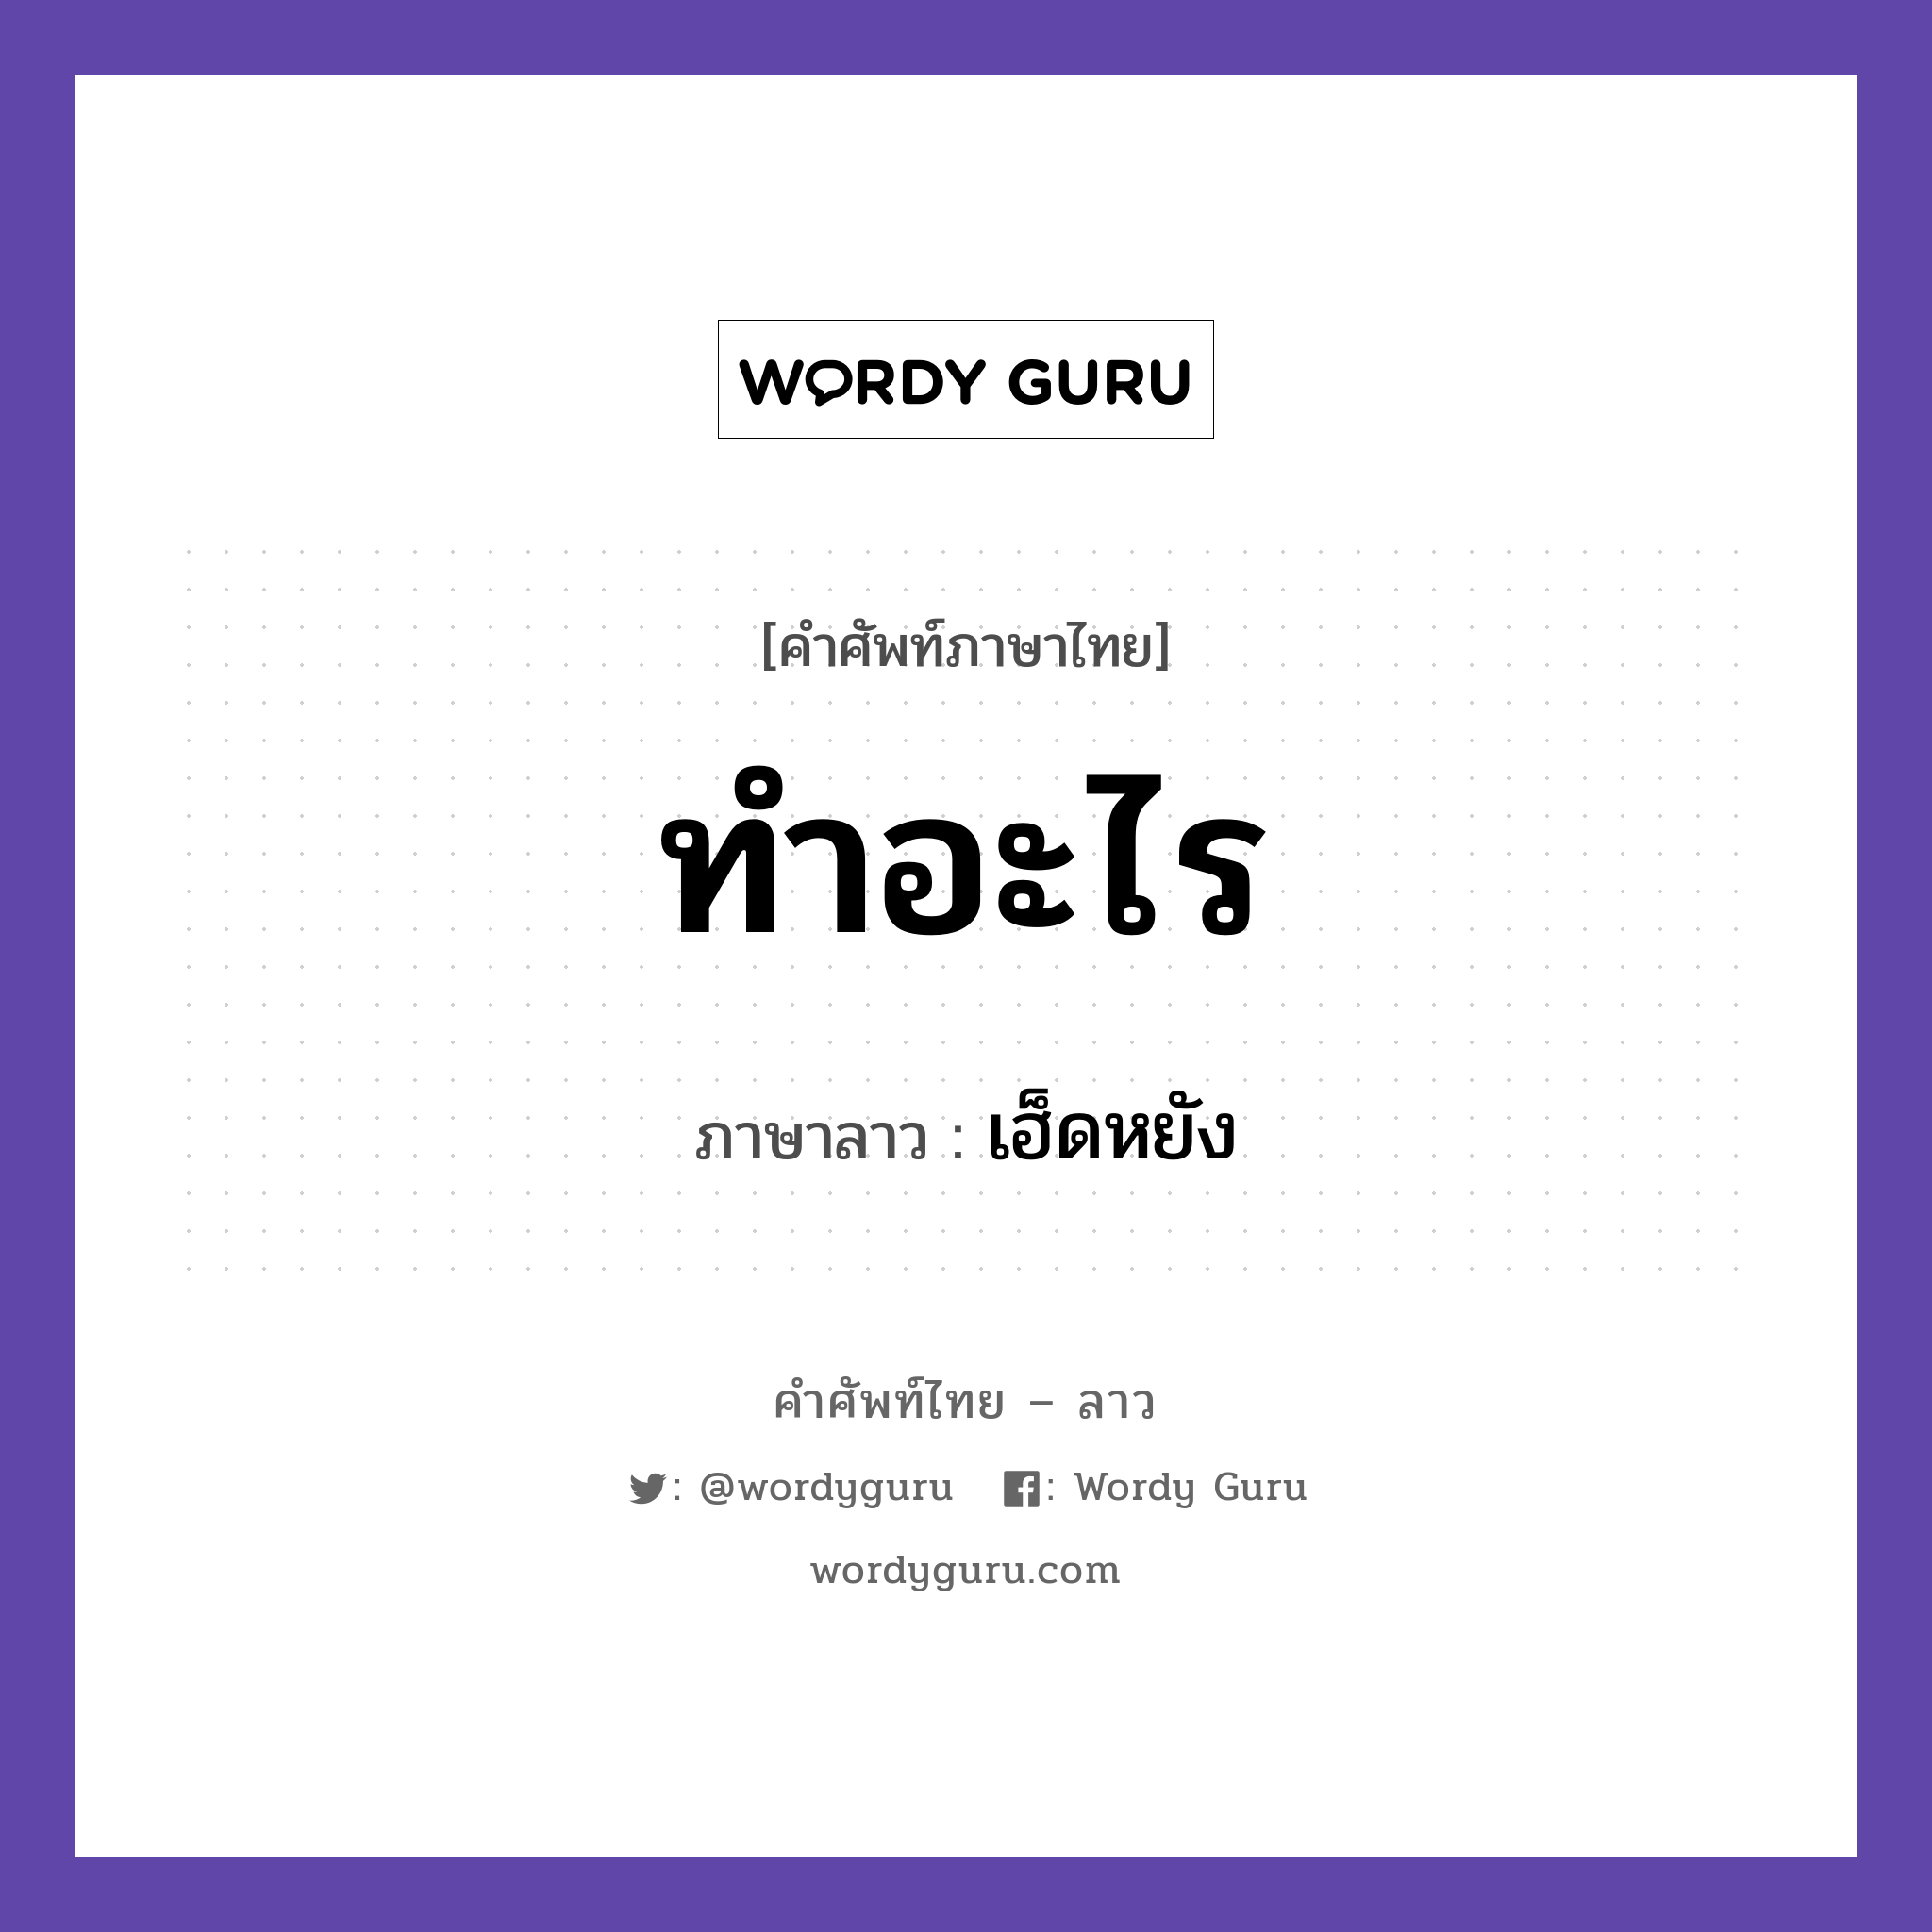 ทำอะไร ภาษาลาวคืออะไร, คำศัพท์ภาษาไทย - ลาว ทำอะไร ภาษาลาว เฮ็ดหยัง หมวด คำถาม หมวด คำถาม